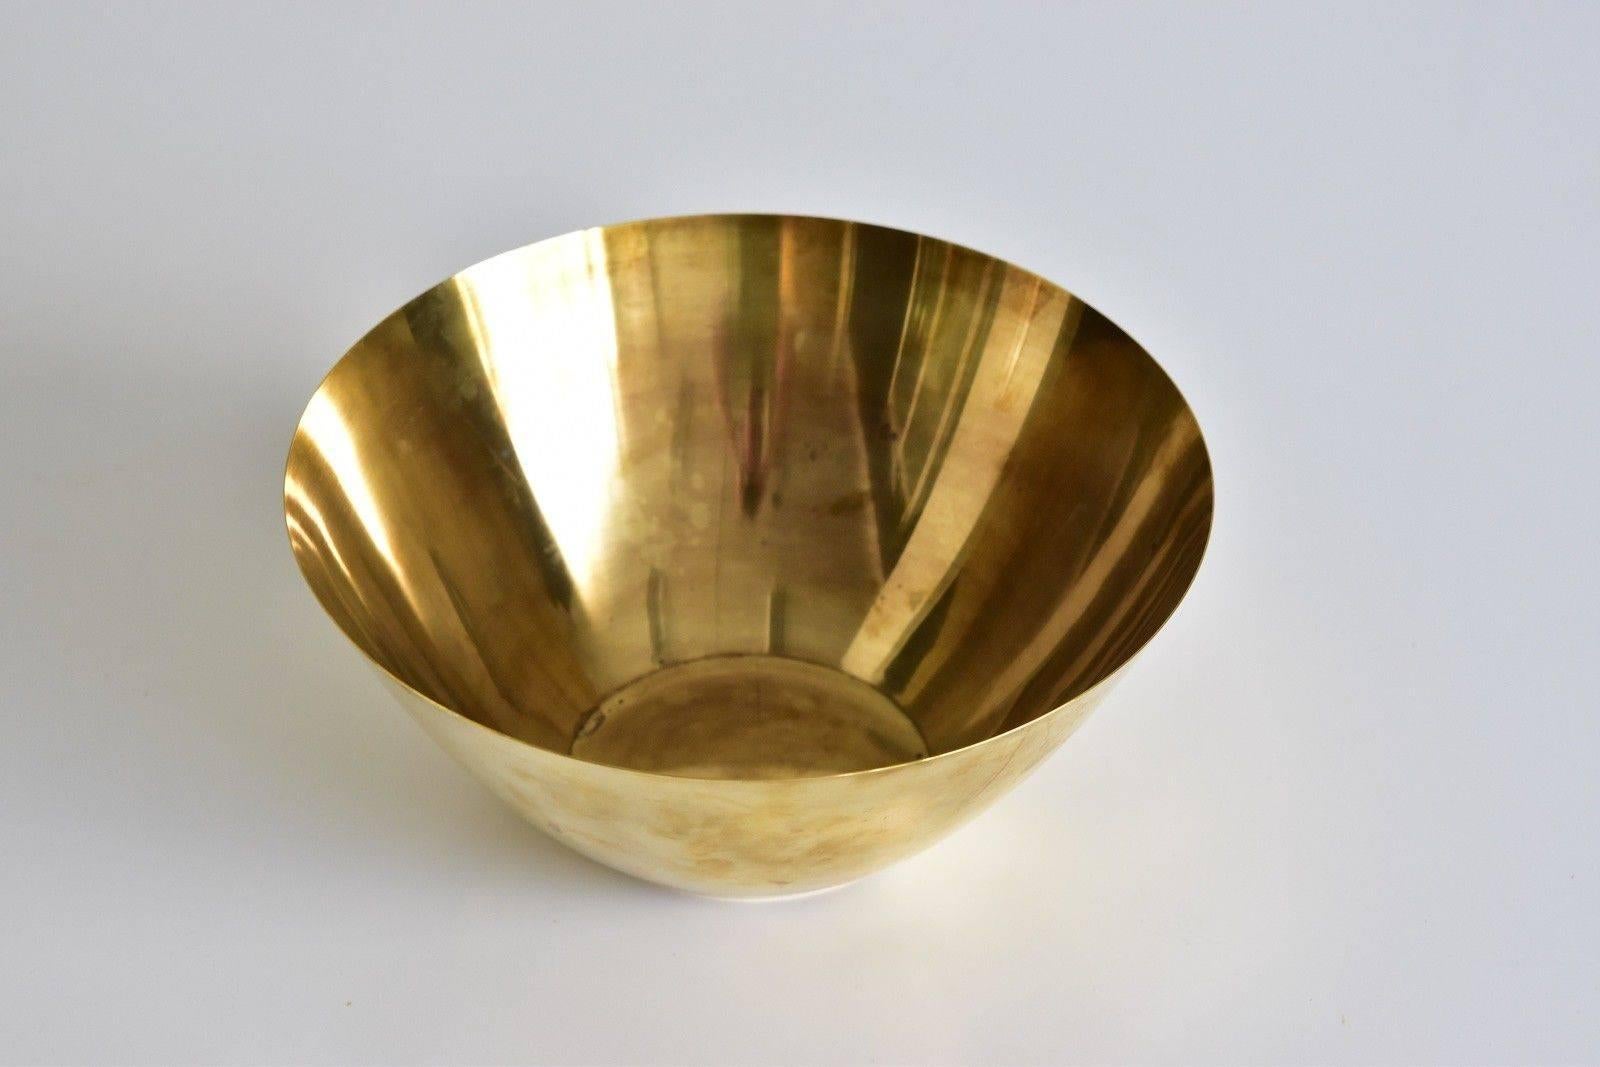 Arne Jacobsen Brass Line Bowl by Stelton Made in Denmark 1